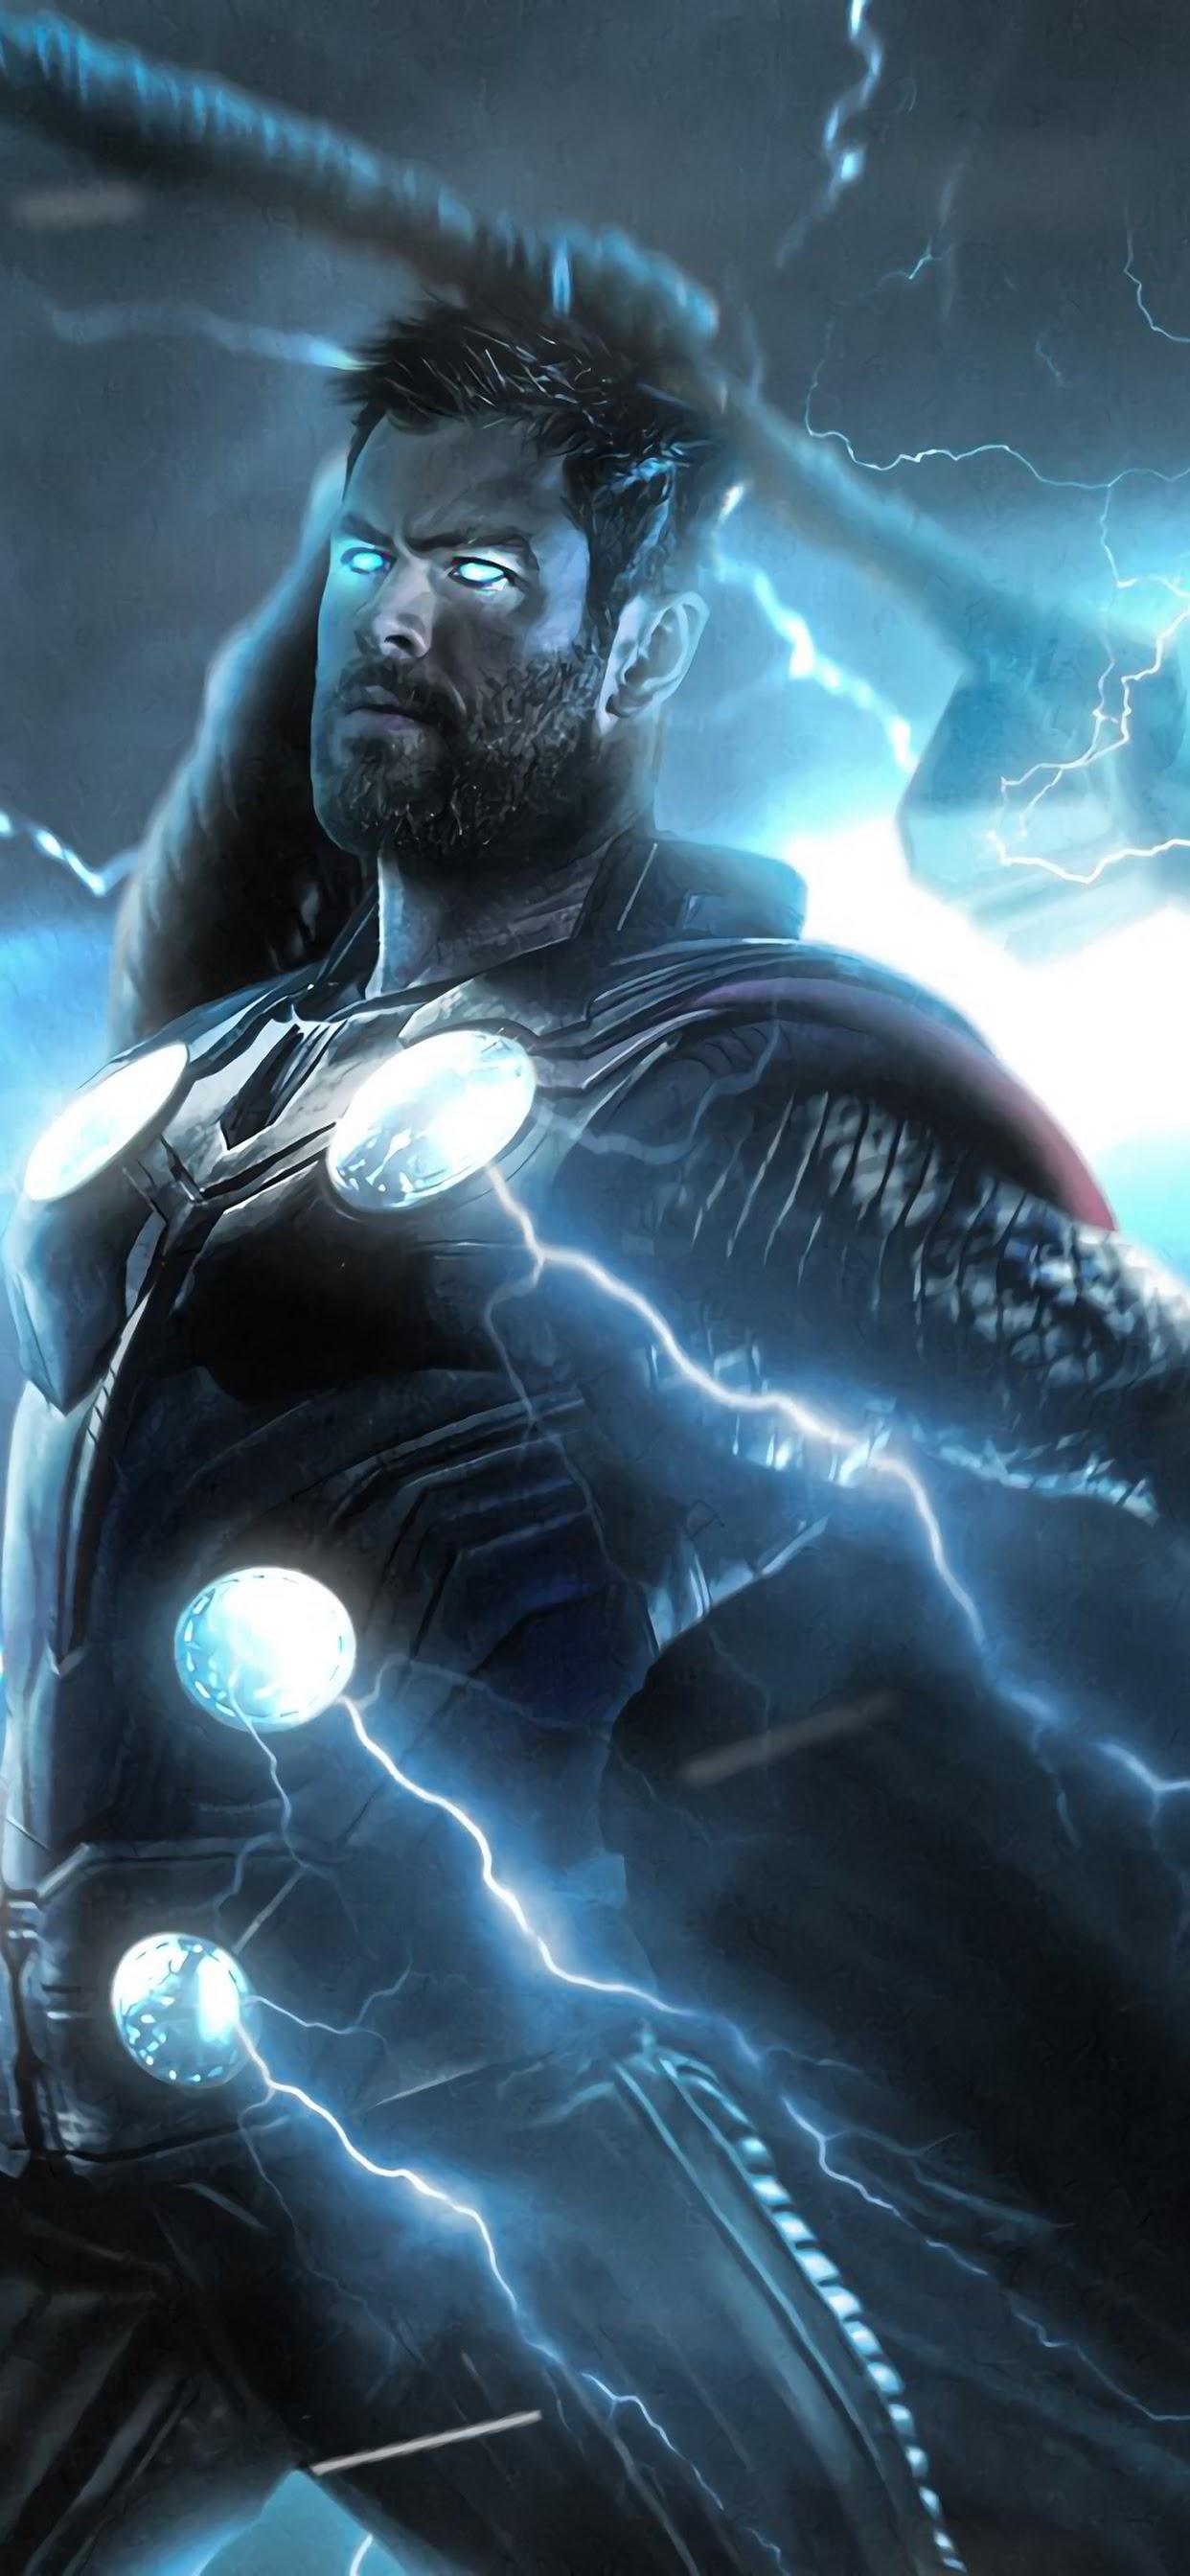 Avengers: Endgame Thor Strombreaker Axe Lightning 4K